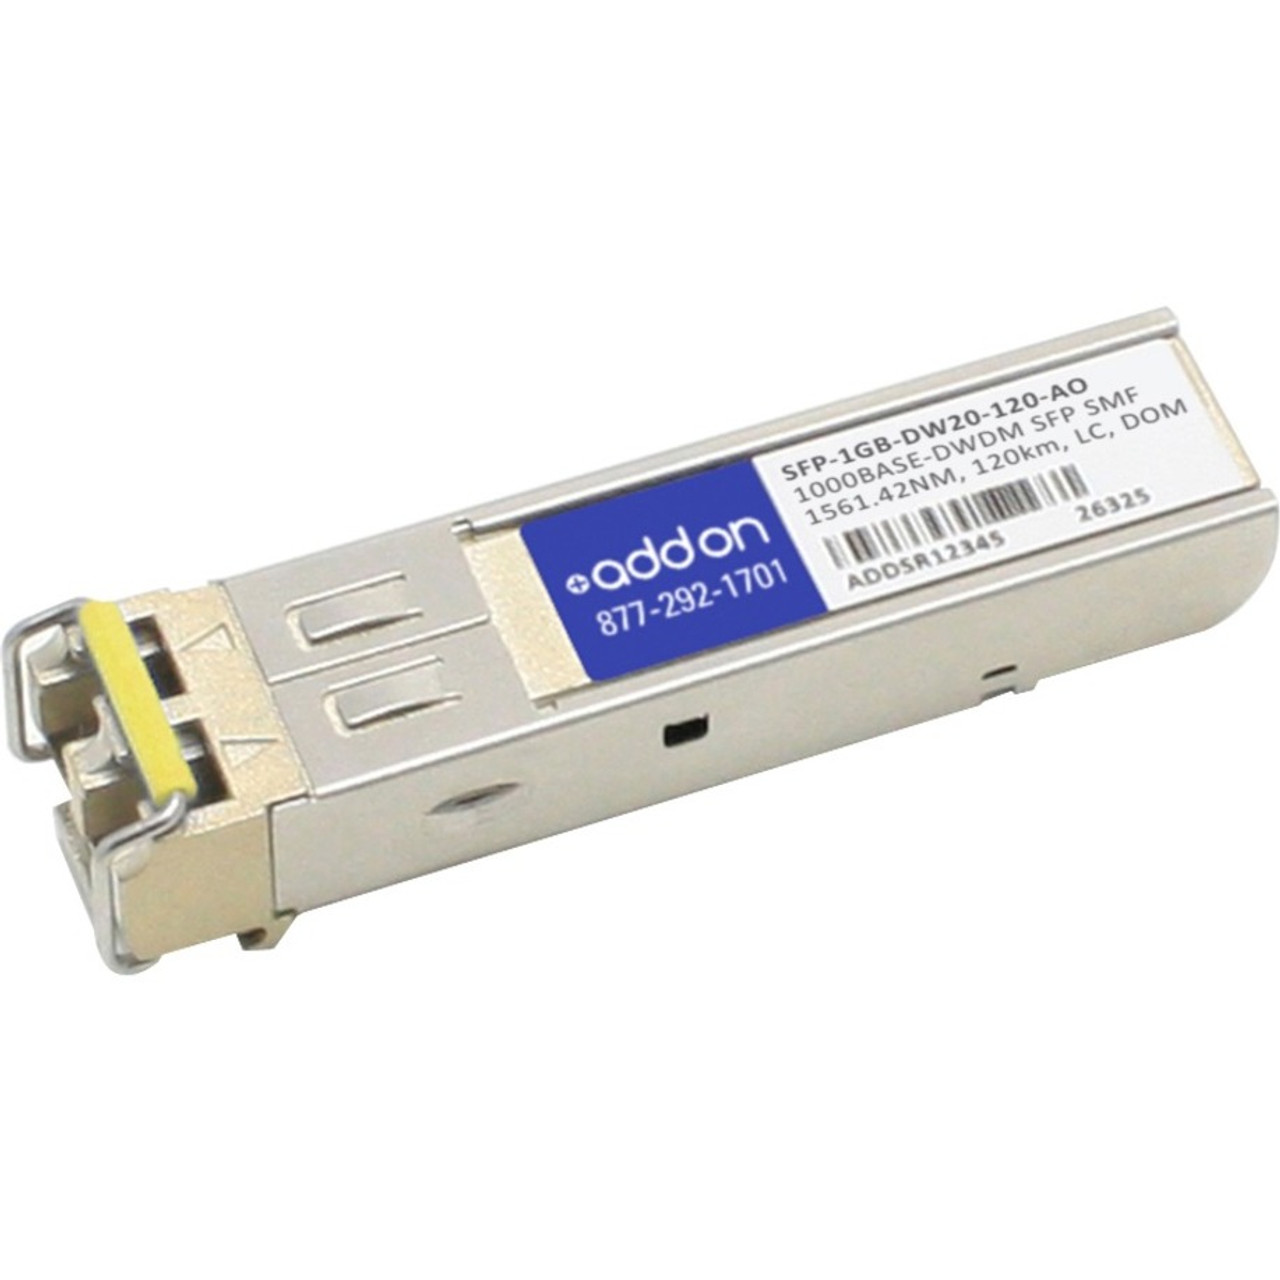 SFP-1GB-DW20-120-AO